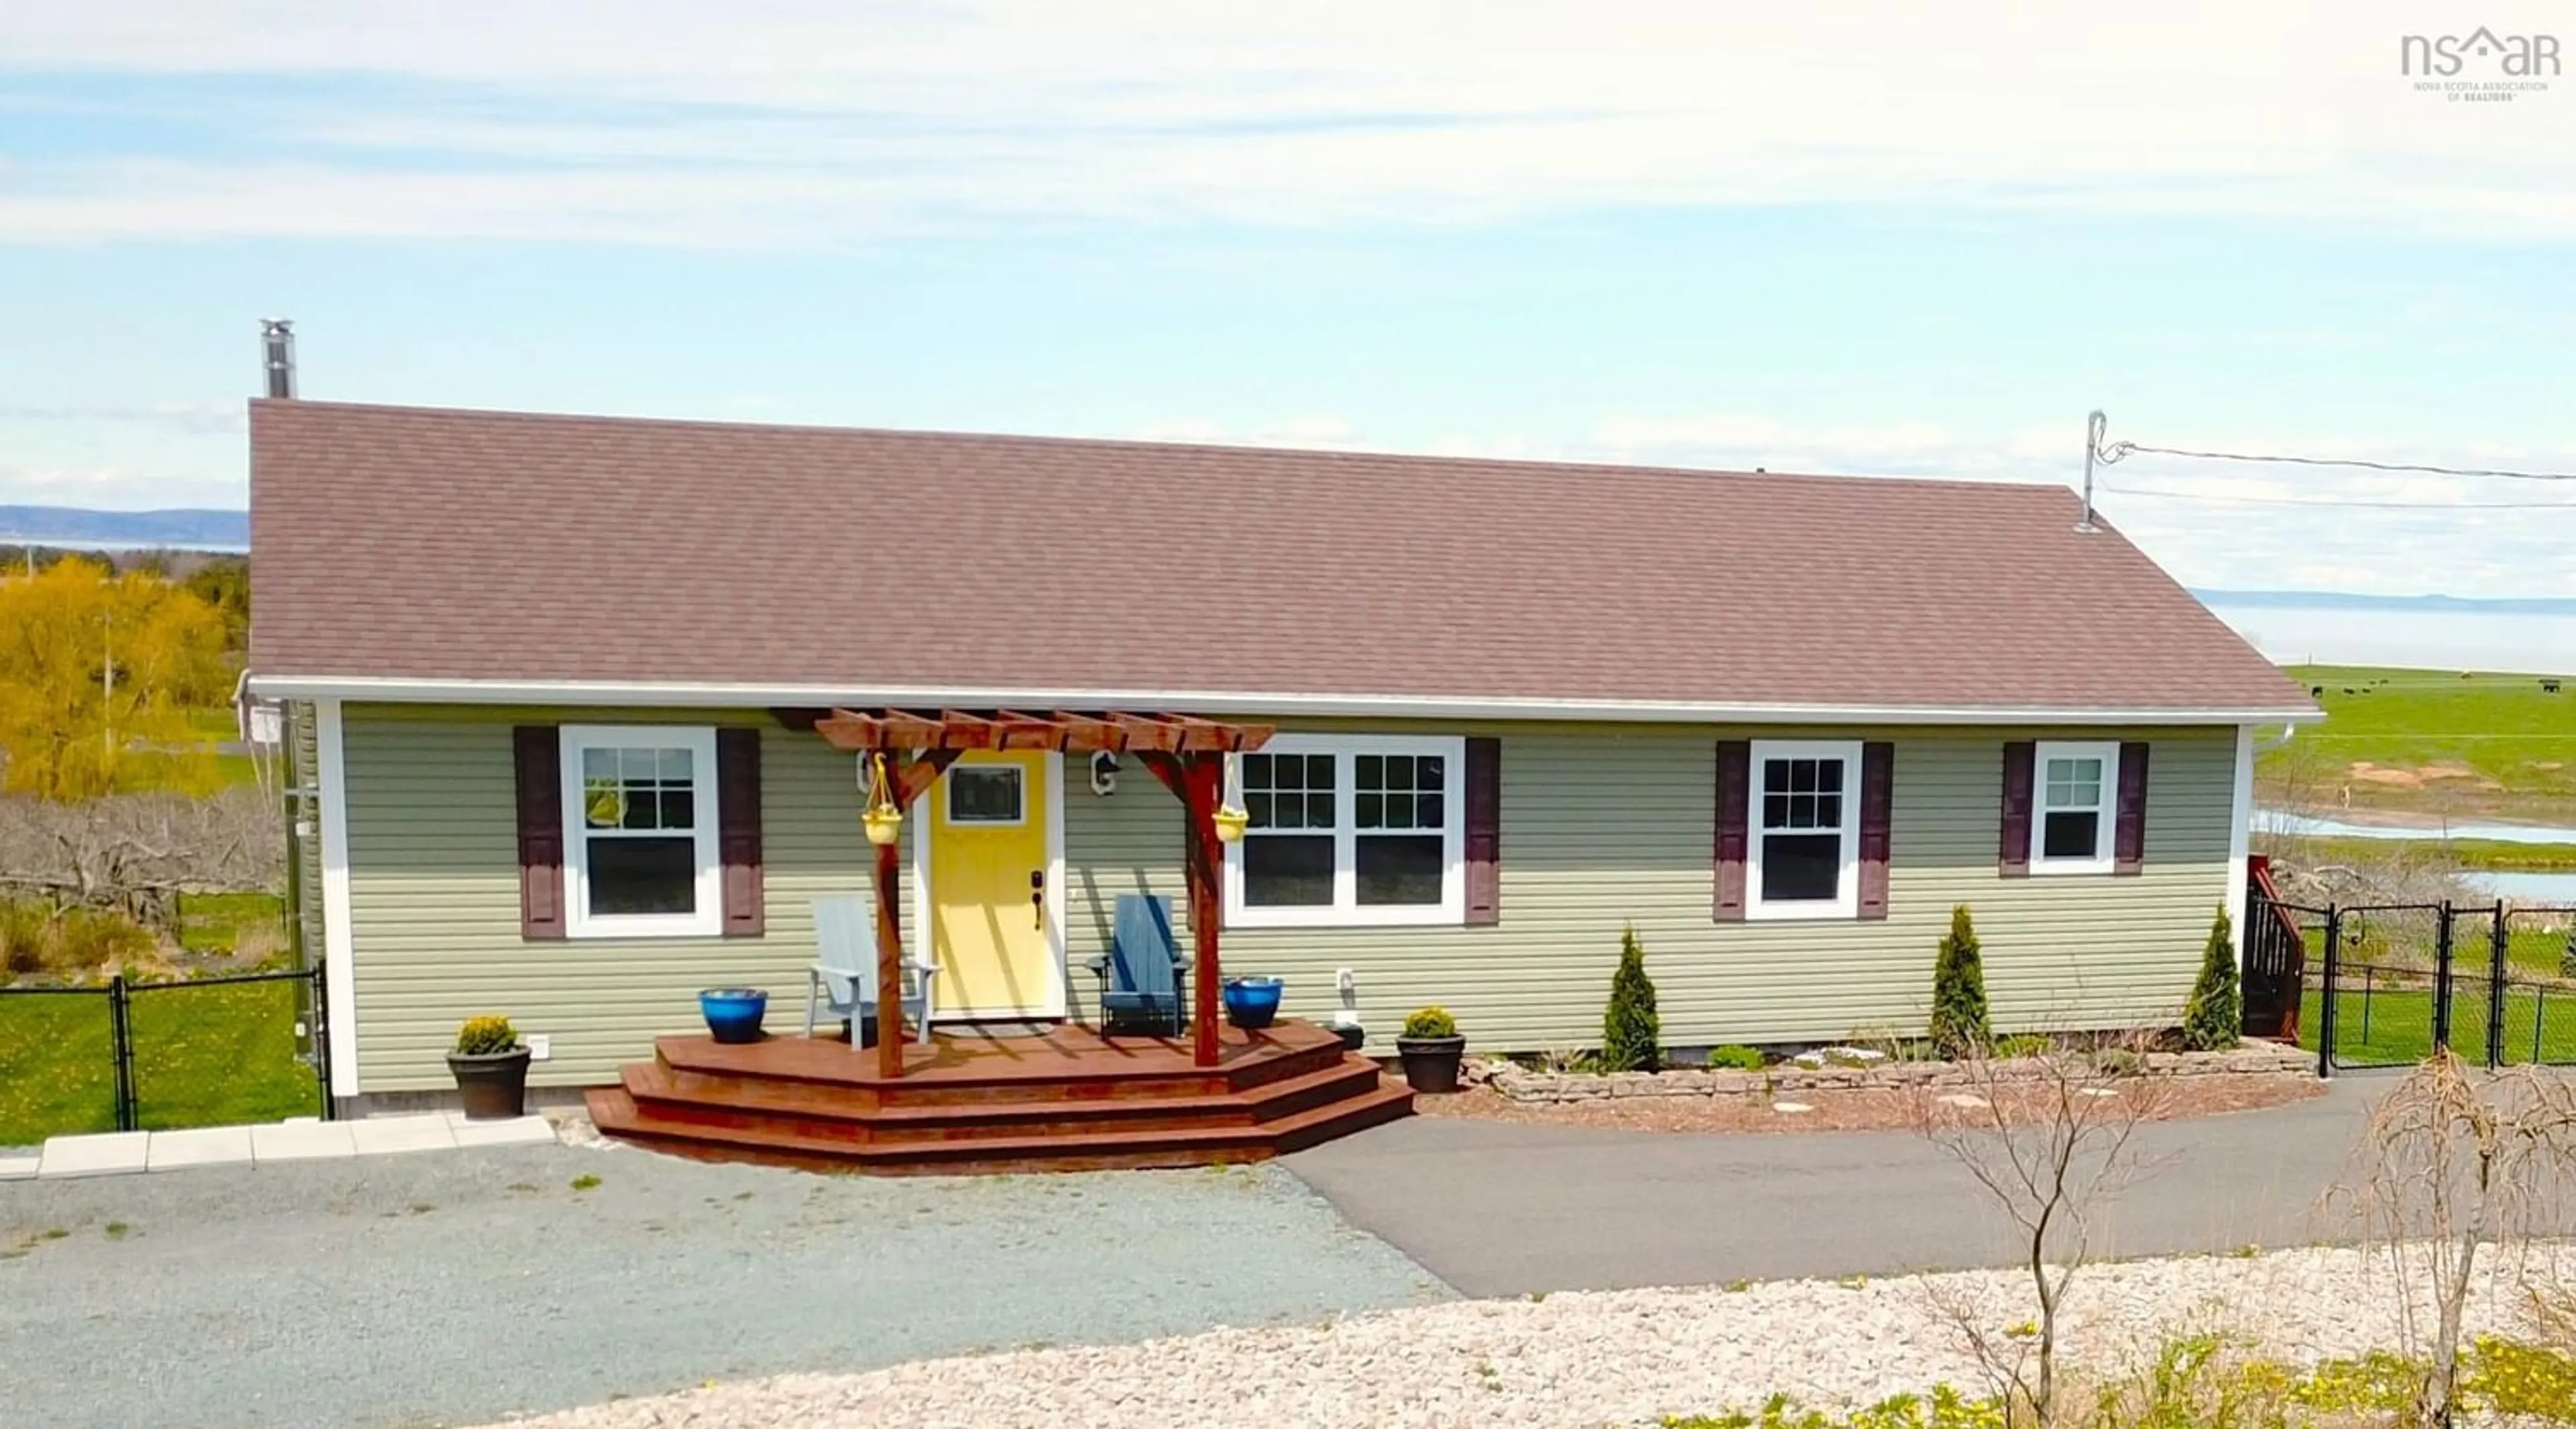 Home with vinyl exterior material for 239 Bluff Rd, Avonport Nova Scotia B0P 1P0